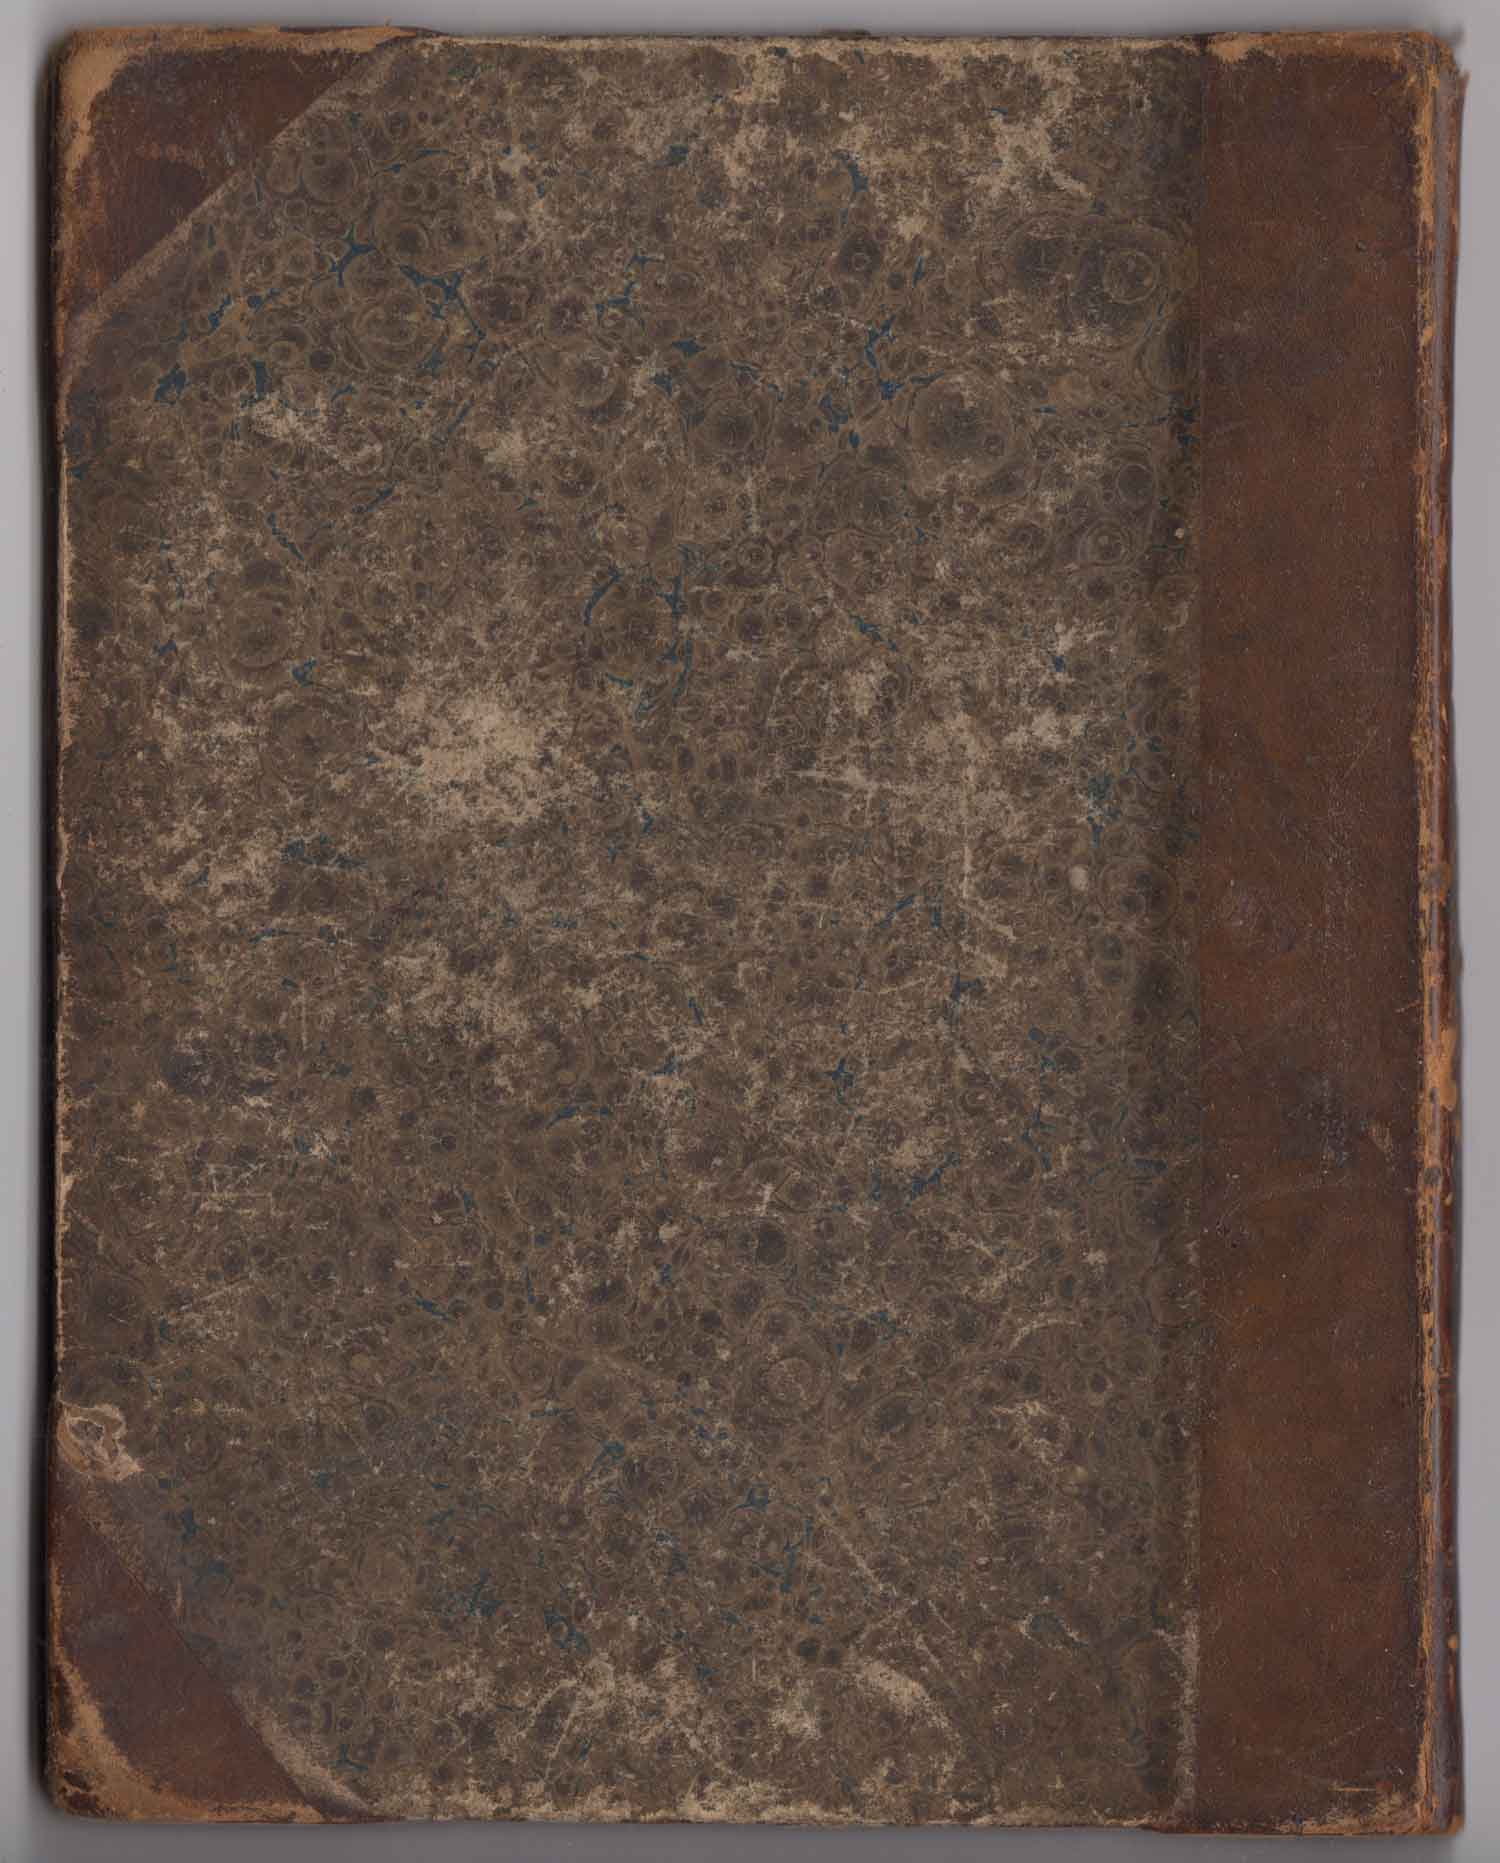 Sách của Cinderella (từ bộ s ưu tập) nằm sau trang bìa, 1845.